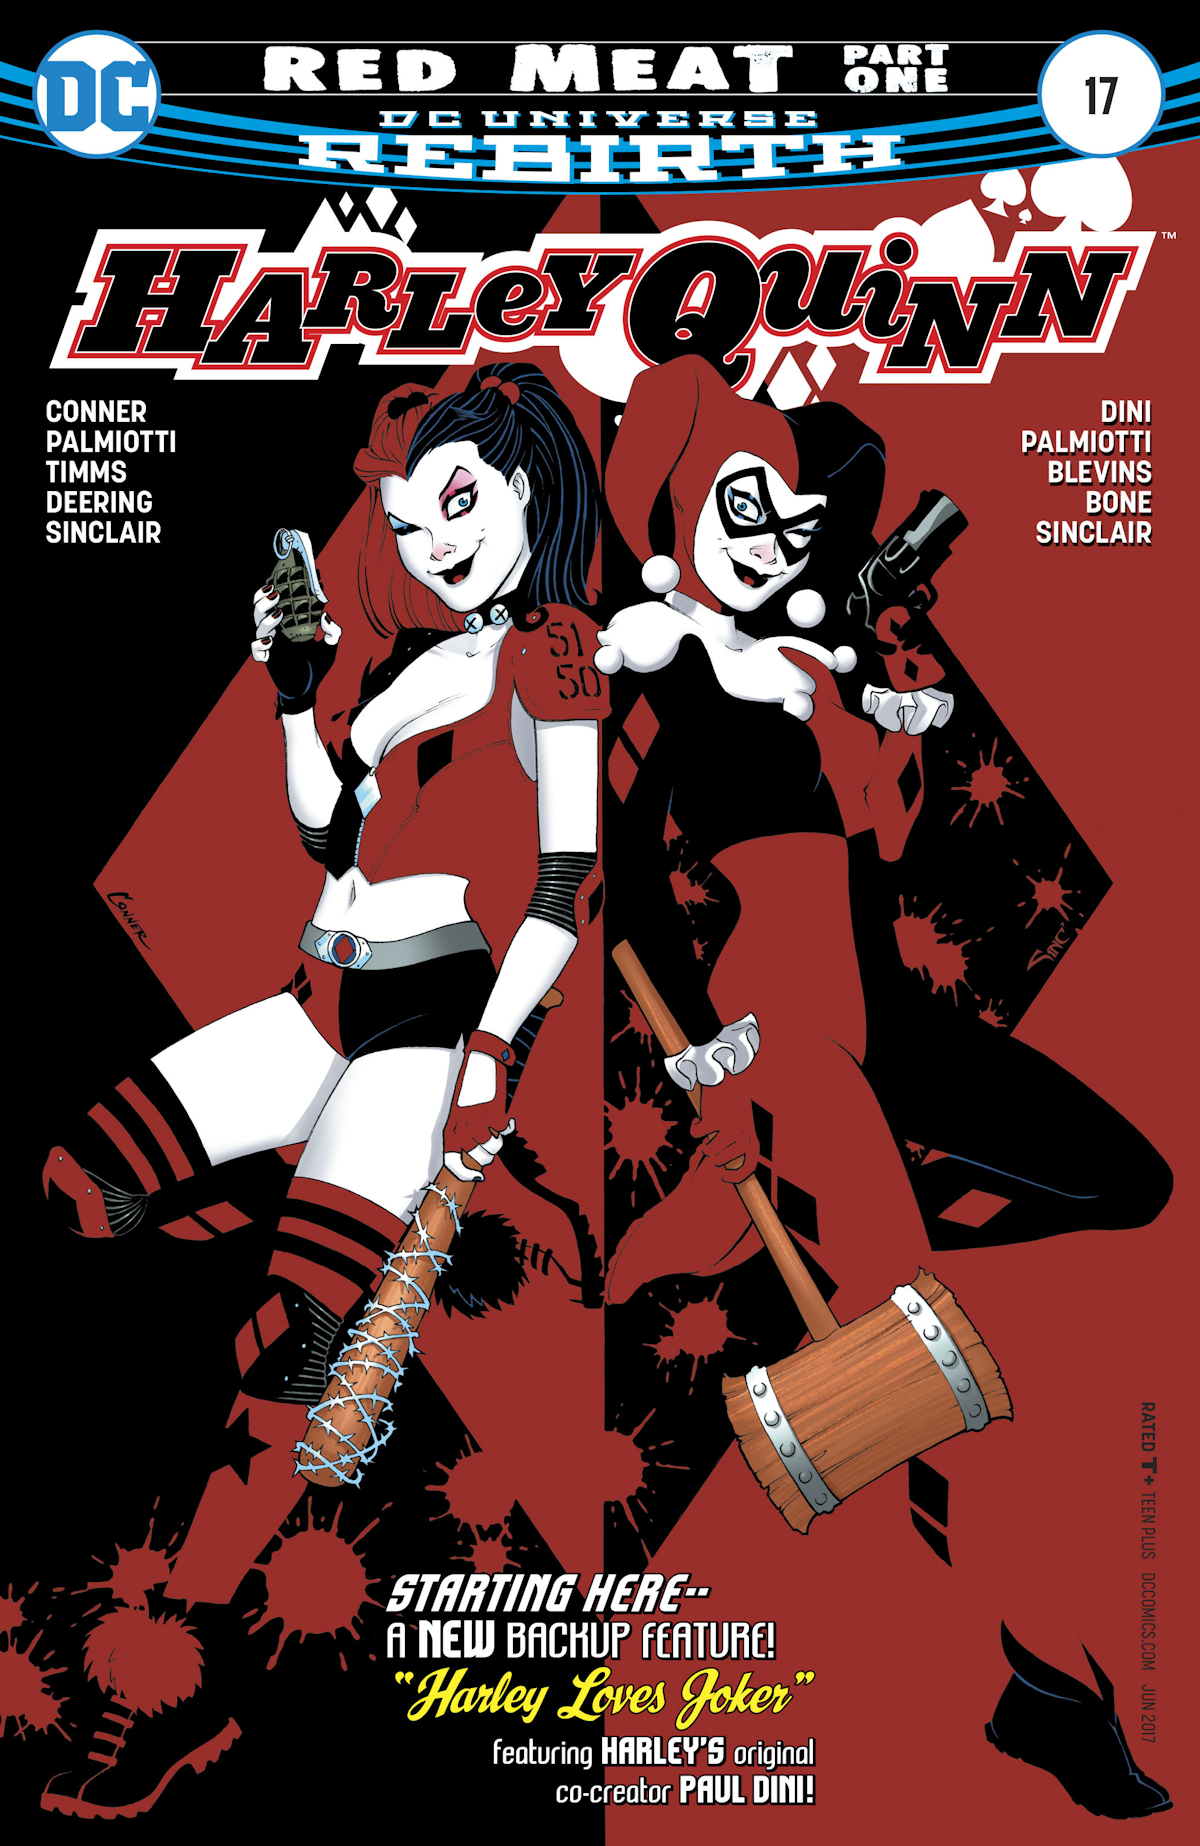 Harley Quinn Vol. 3 17 (Cover A)